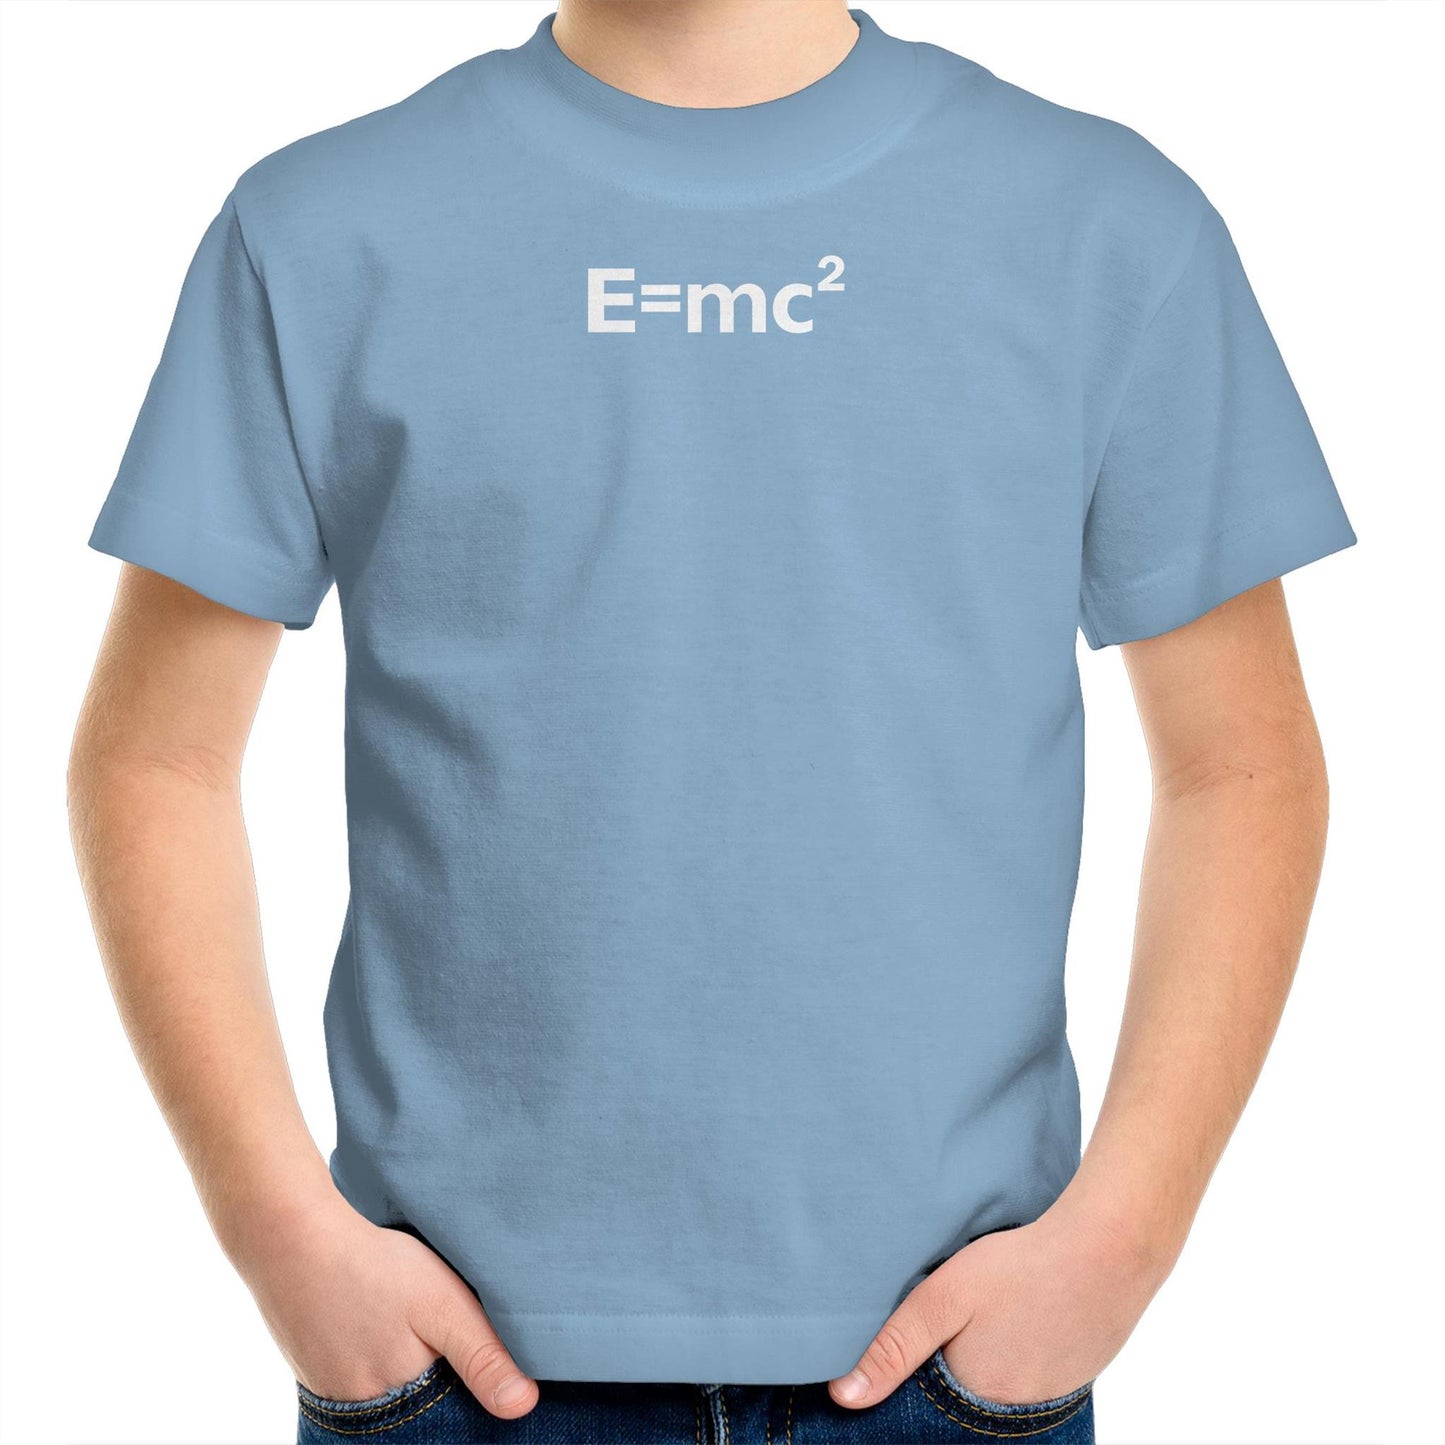 E=mc2 T Shirts for Kids